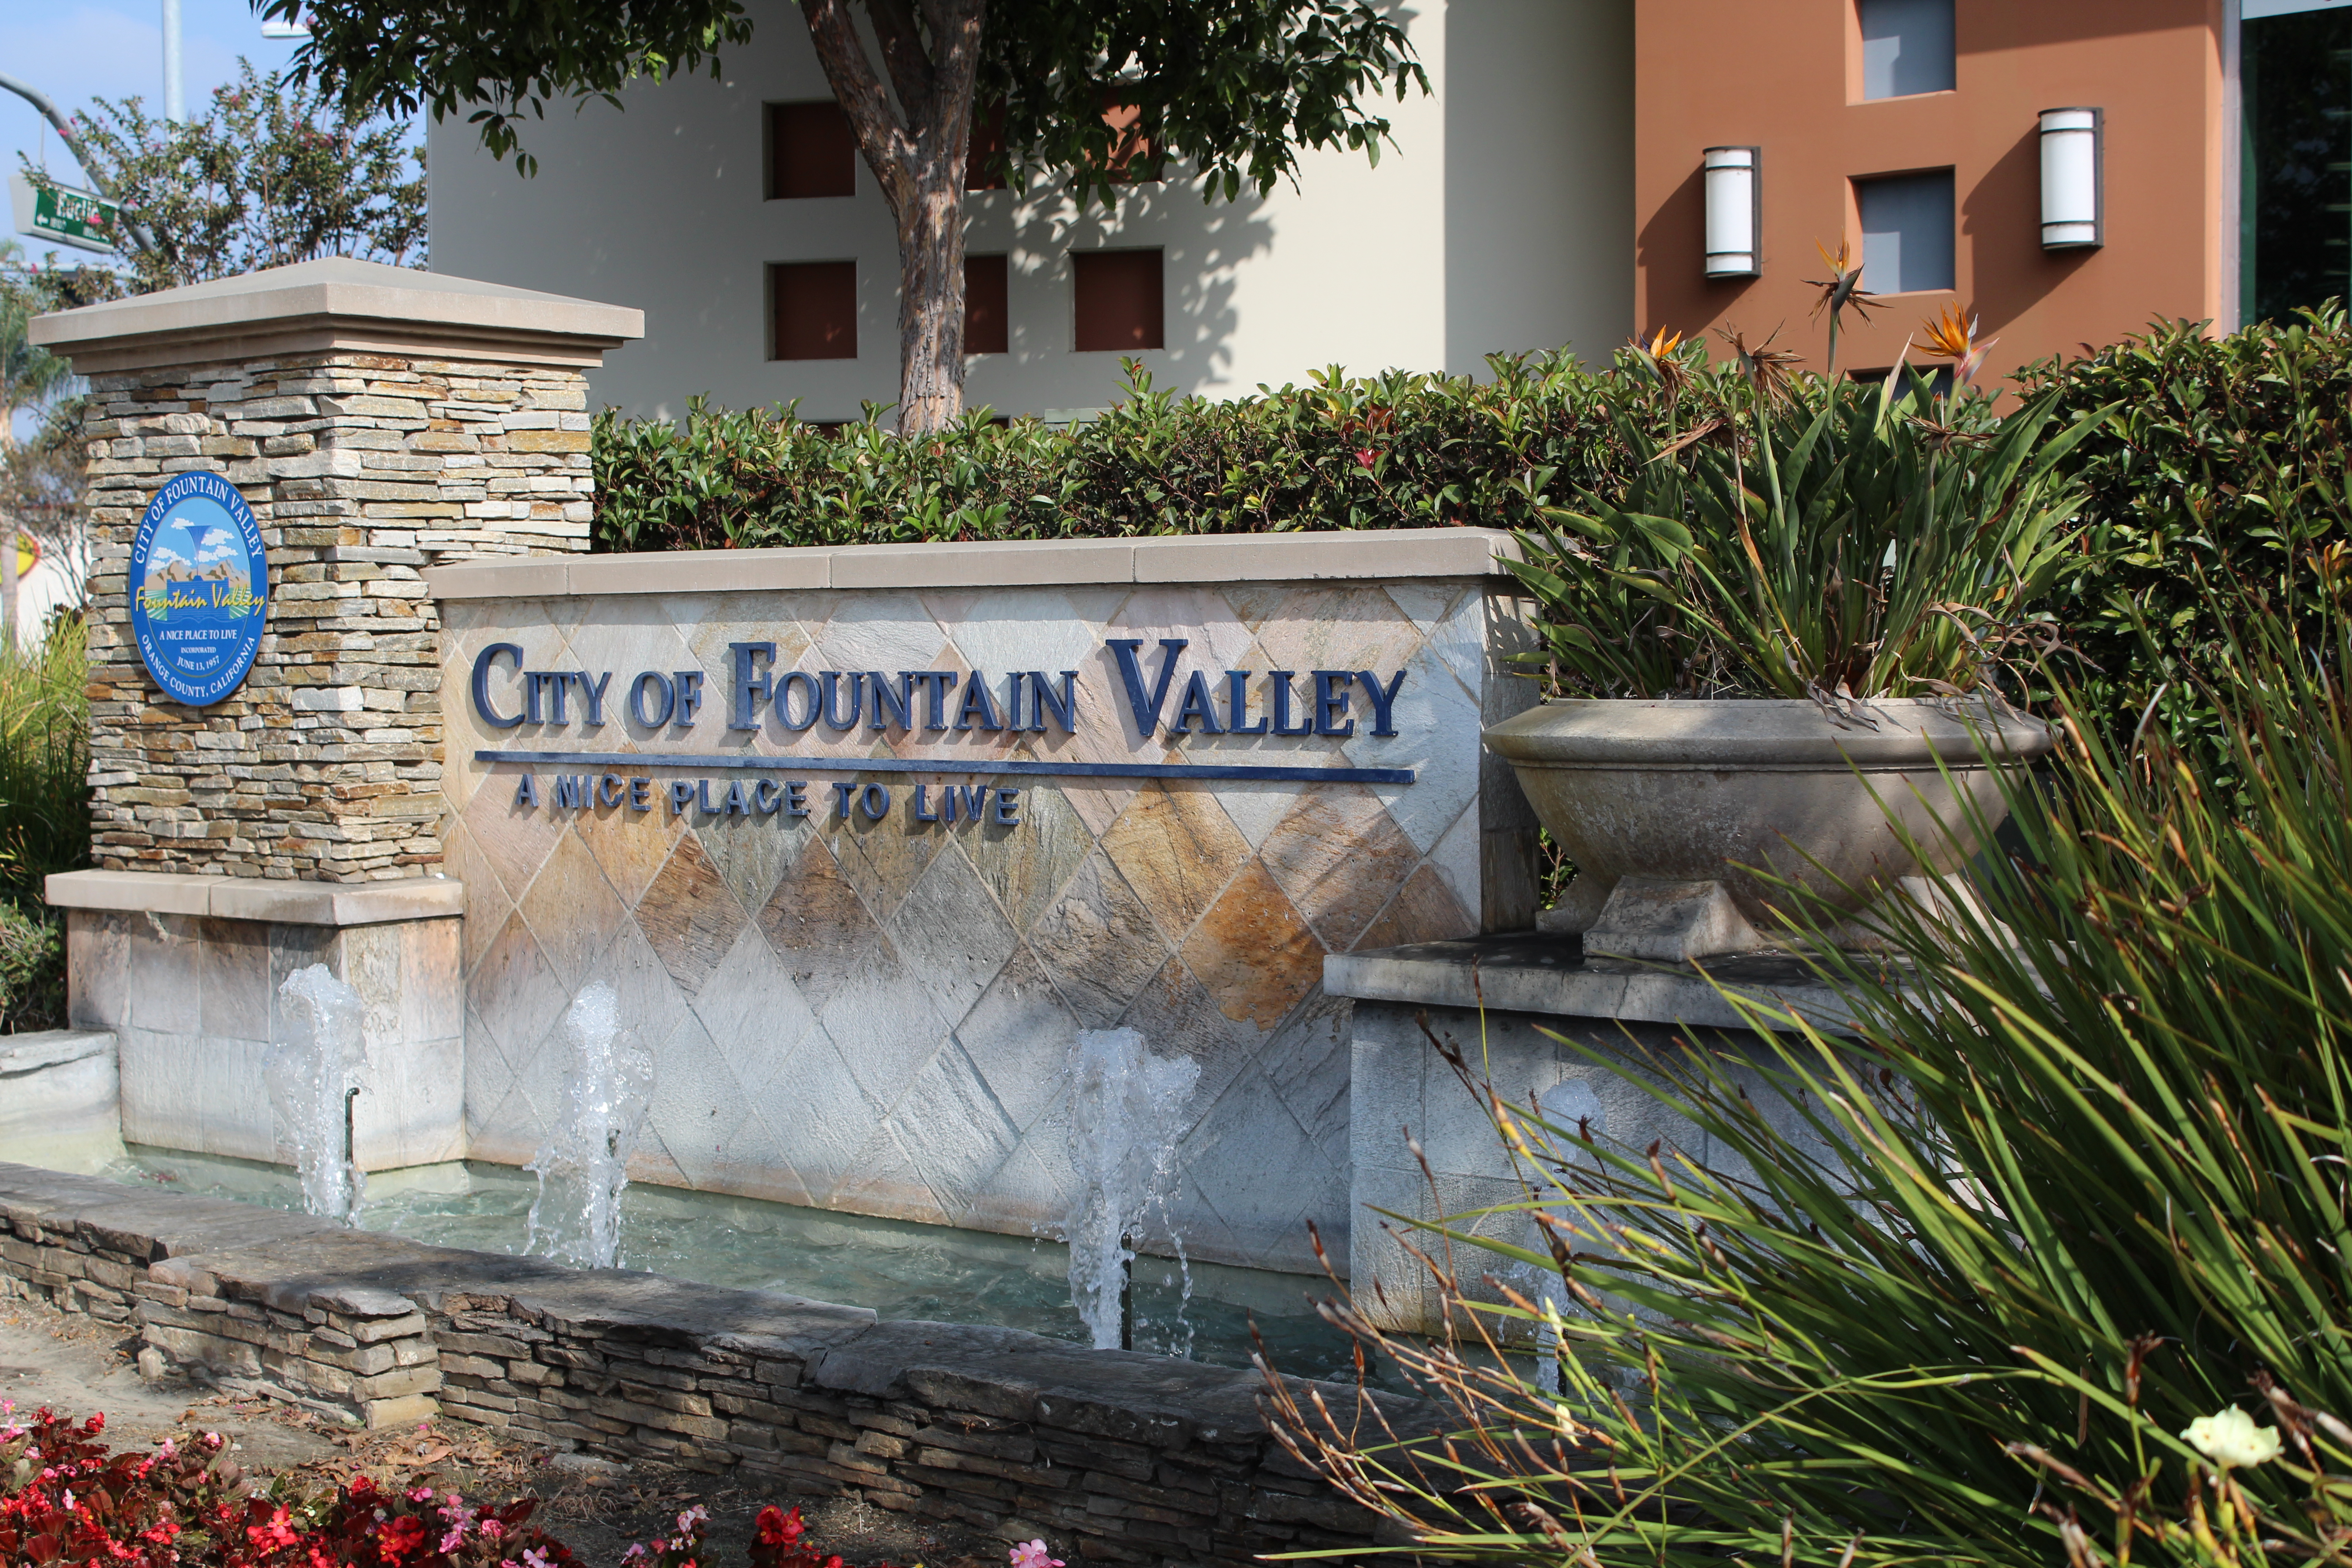 visita-fountain-valley-el-mejor-viaje-a-fountain-valley-california